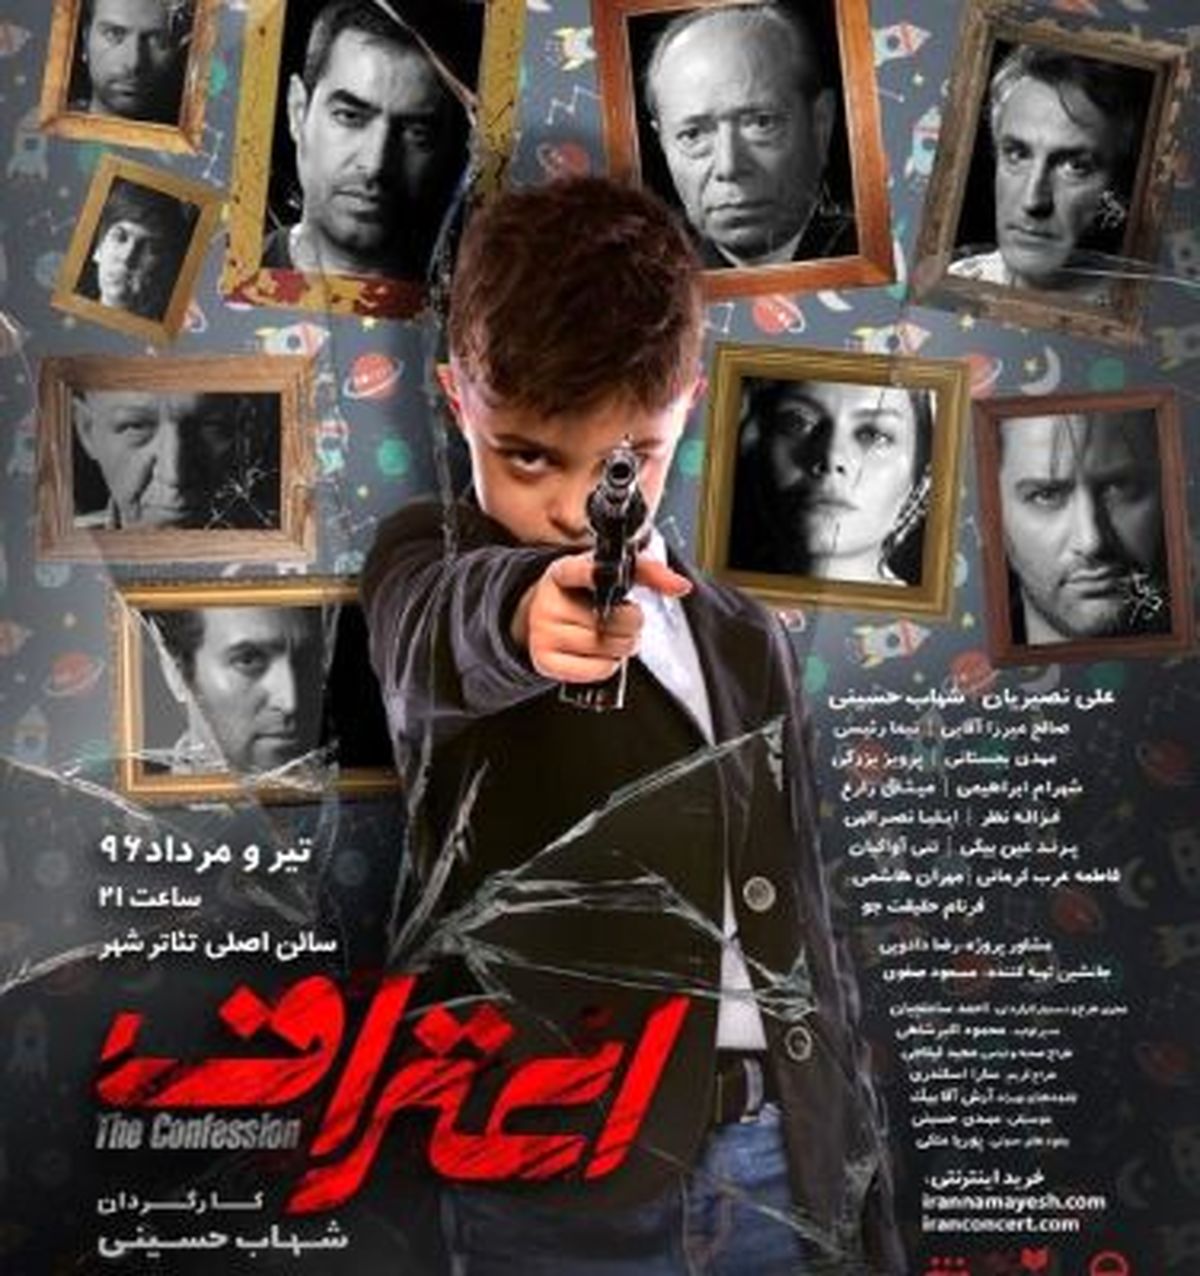 سومین تیزر نمایش شهاب حسینی رونمایی شد+فیلم